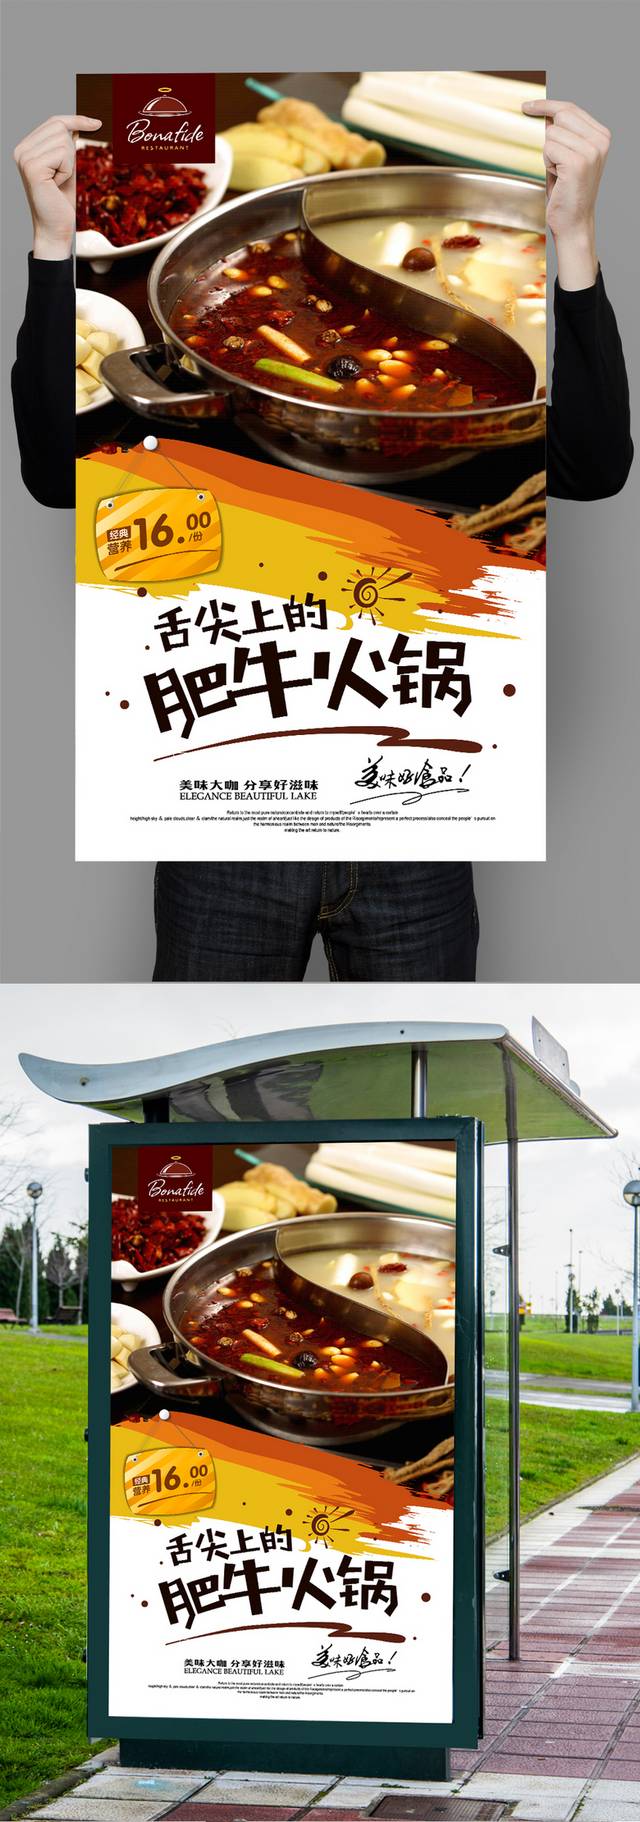 高档大气肥牛火锅宣传海报设计